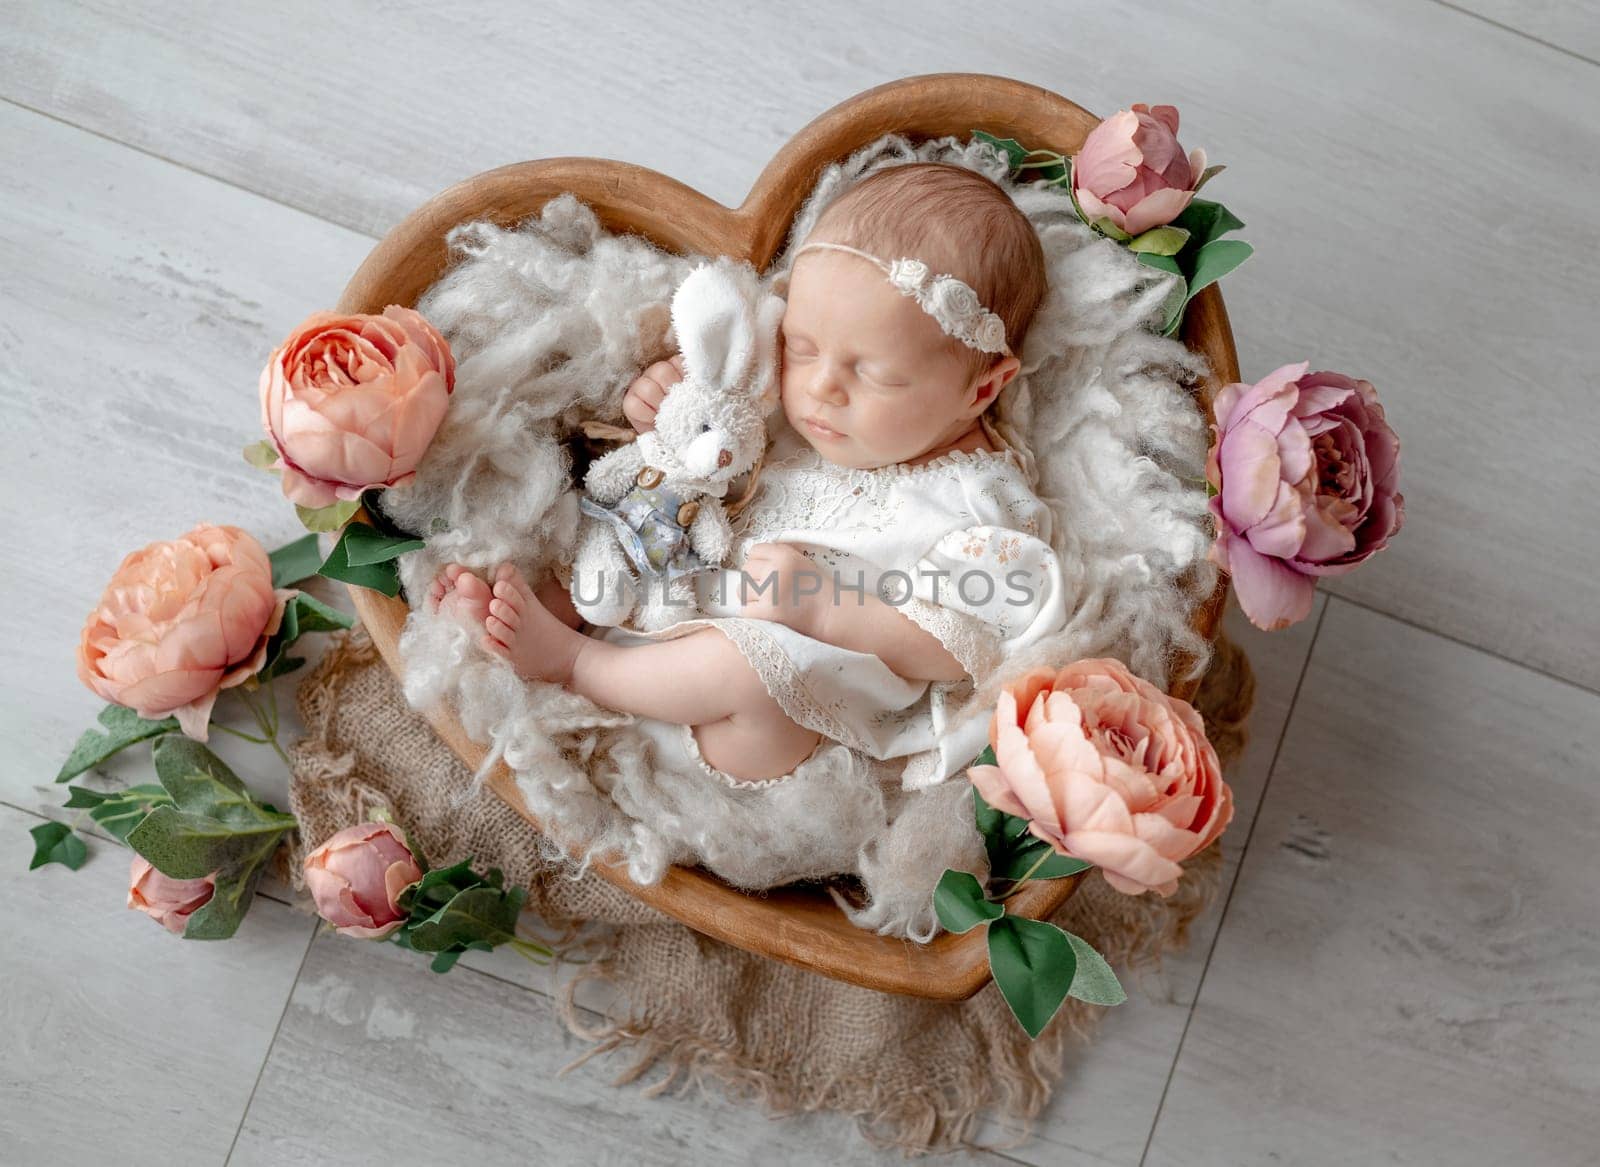 Baby Girl In Dress Sleeps In Heart-Shaped Wooden Bowl Among Flowers by tan4ikk1